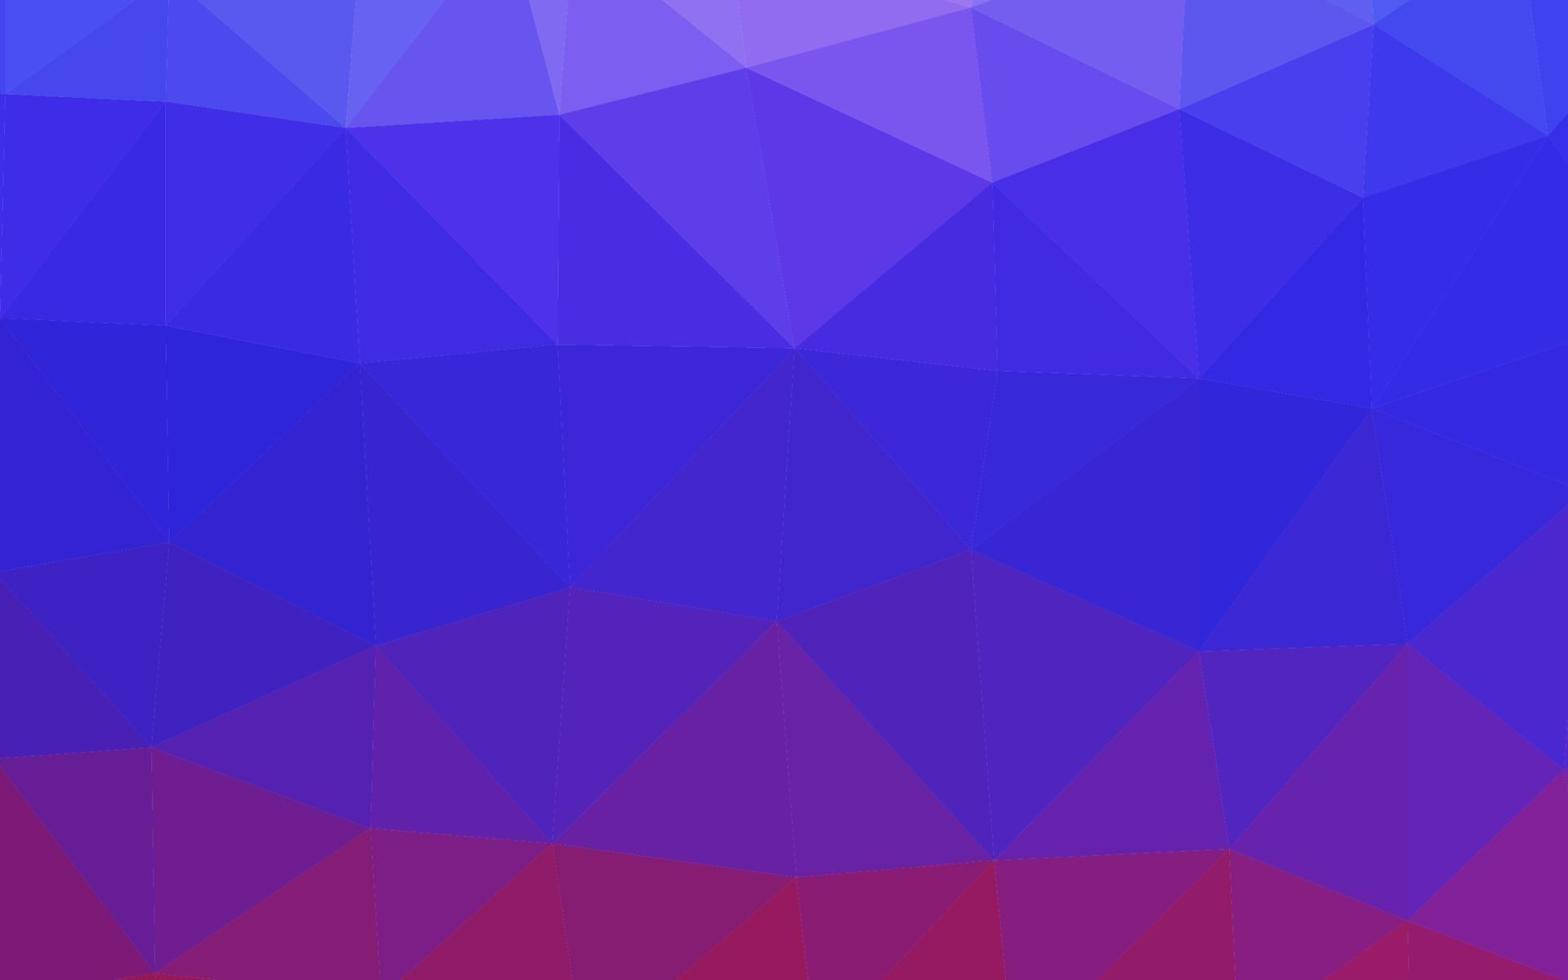 luz-de-rosa, azul capa poligonal abstrata de vetor. vetor